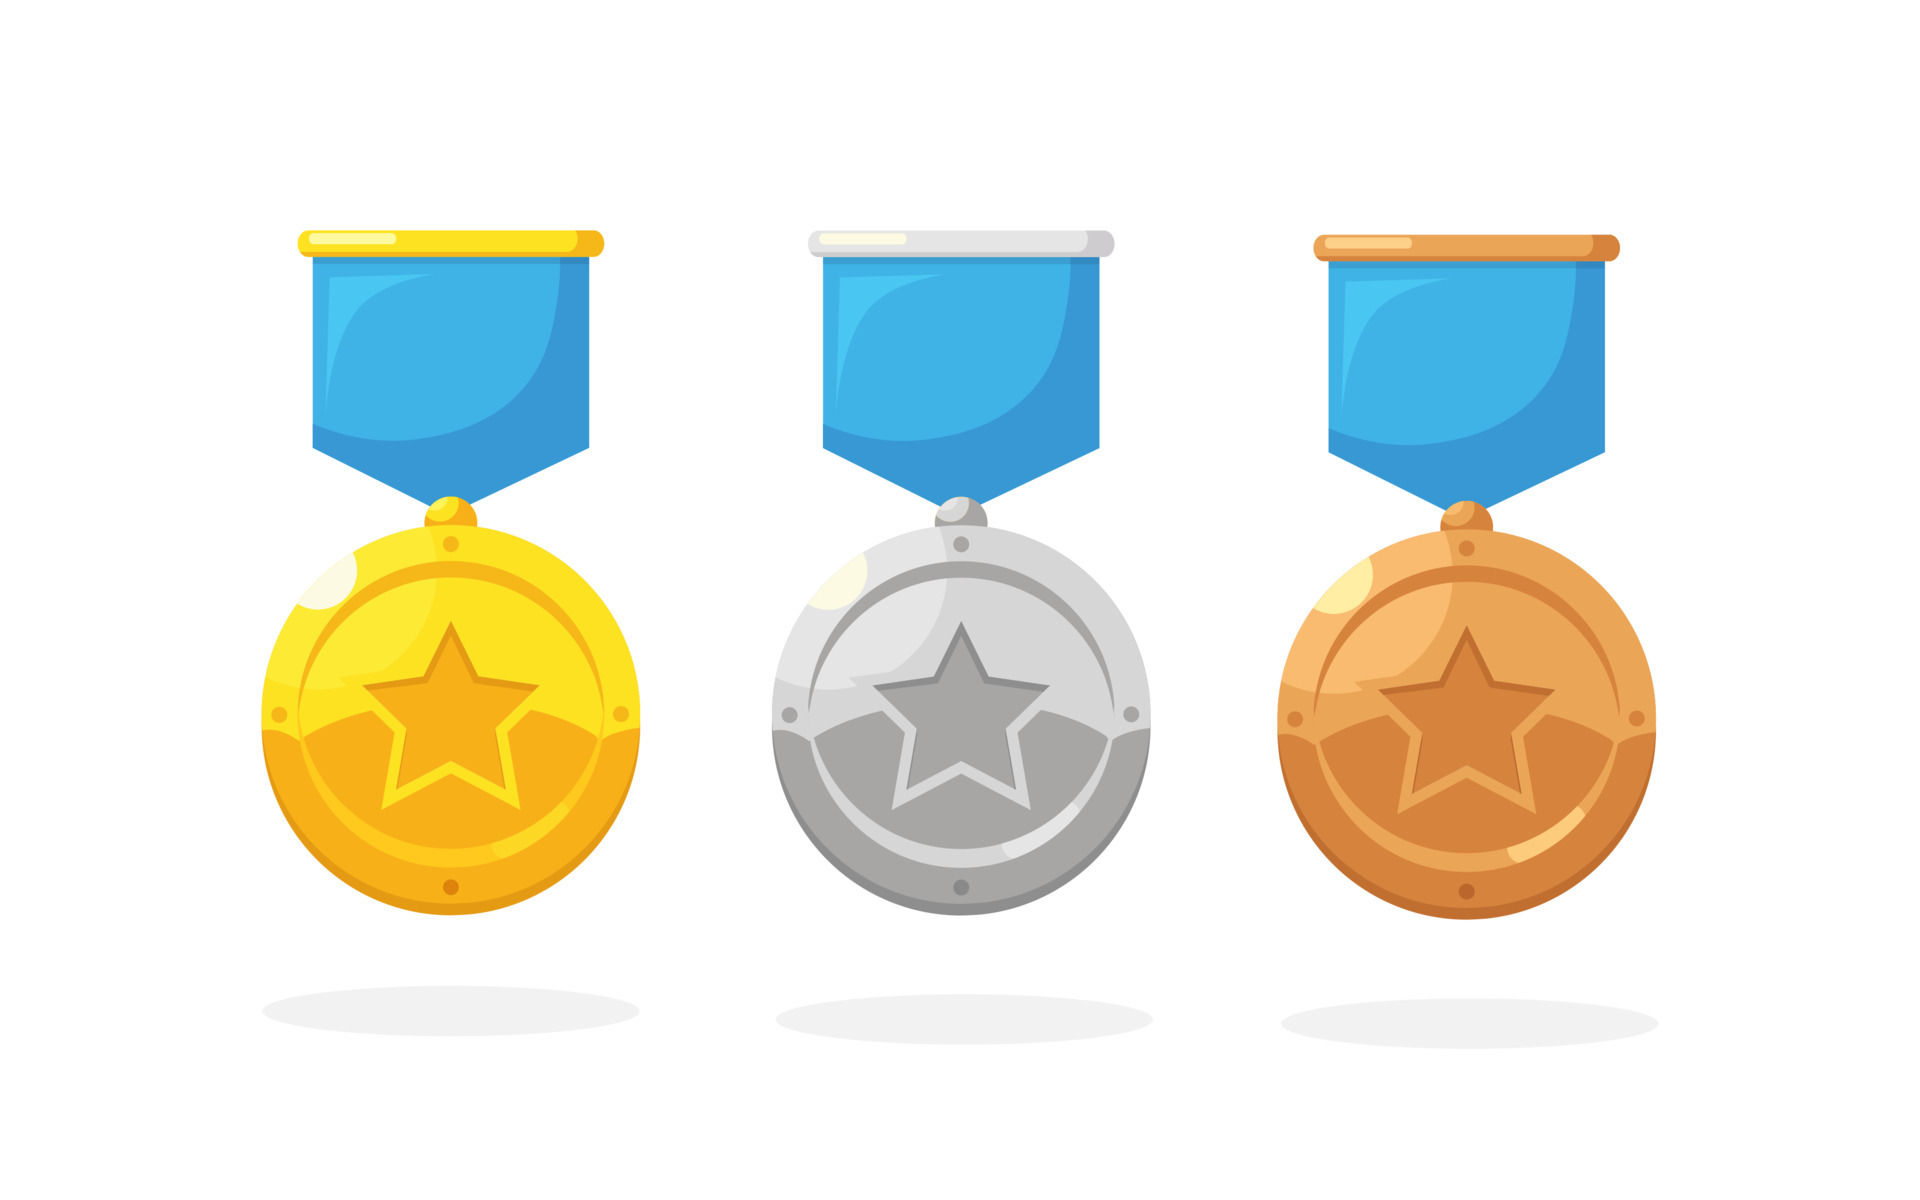 Medallas Olímpicas De Oro, Plata Y Bronce, Conjunto De Vectores De Premios  De Honor Ganadores. Medalla Para El Ganador, Ilustración De Medallas De  Trofeo. Ilustraciones svg, vectoriales, clip art vectorizado libre de